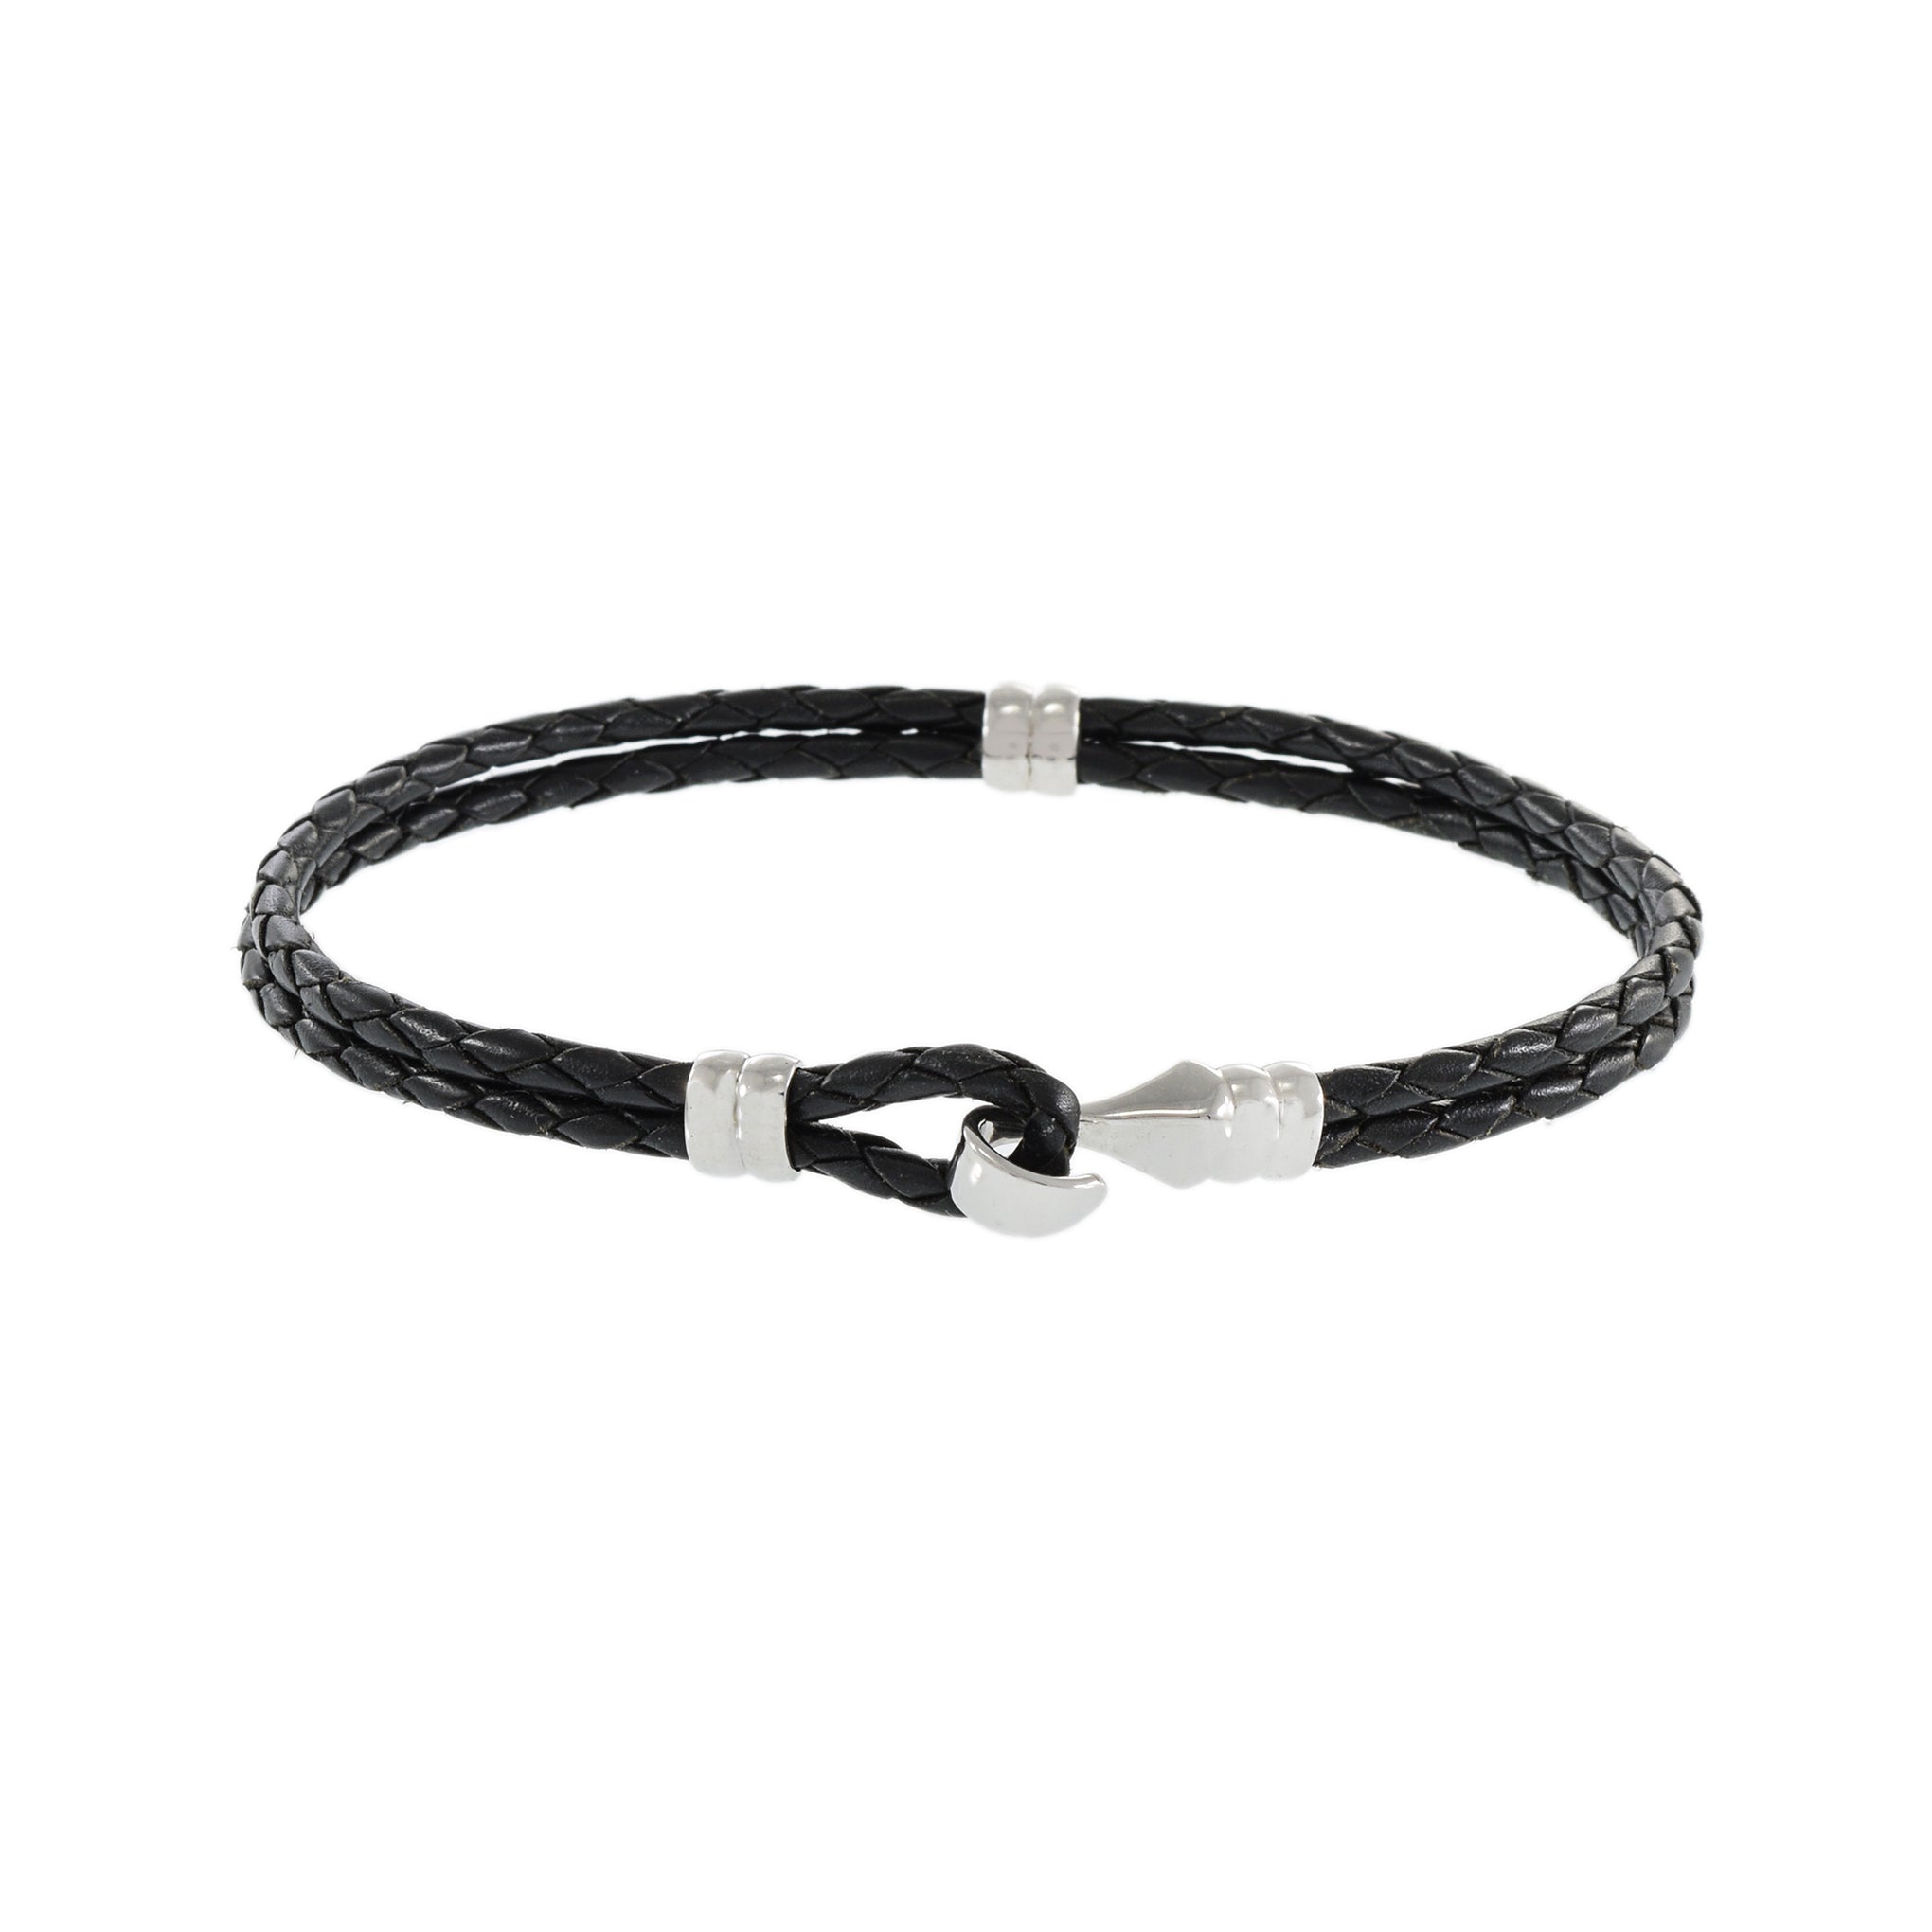 Louis Martin Sterling Silver 8.5" Italian Black Leather Weave Bracelet